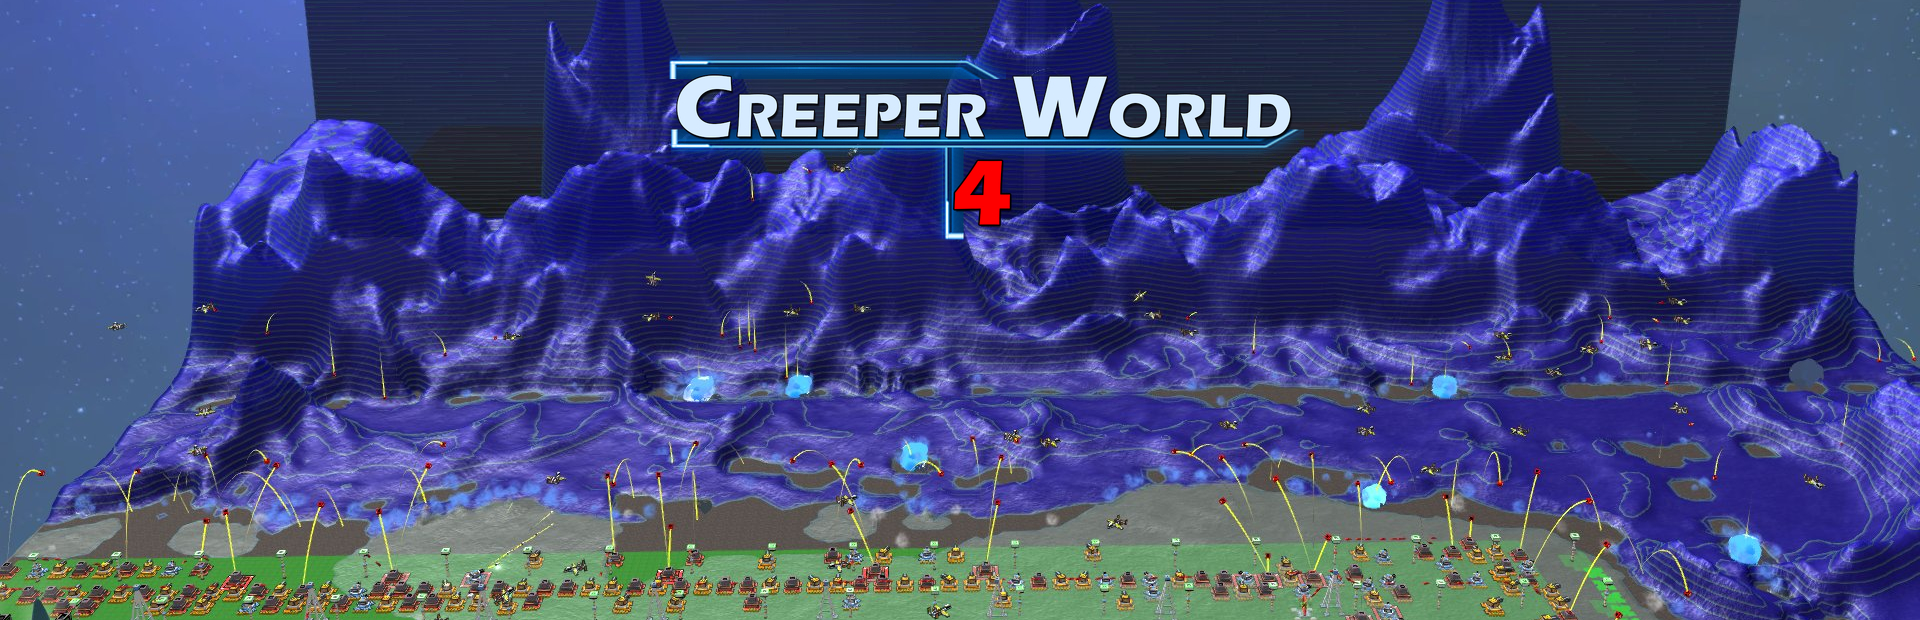 دانلود بازی Creeper World 4 برای پی سی | گیمباتو